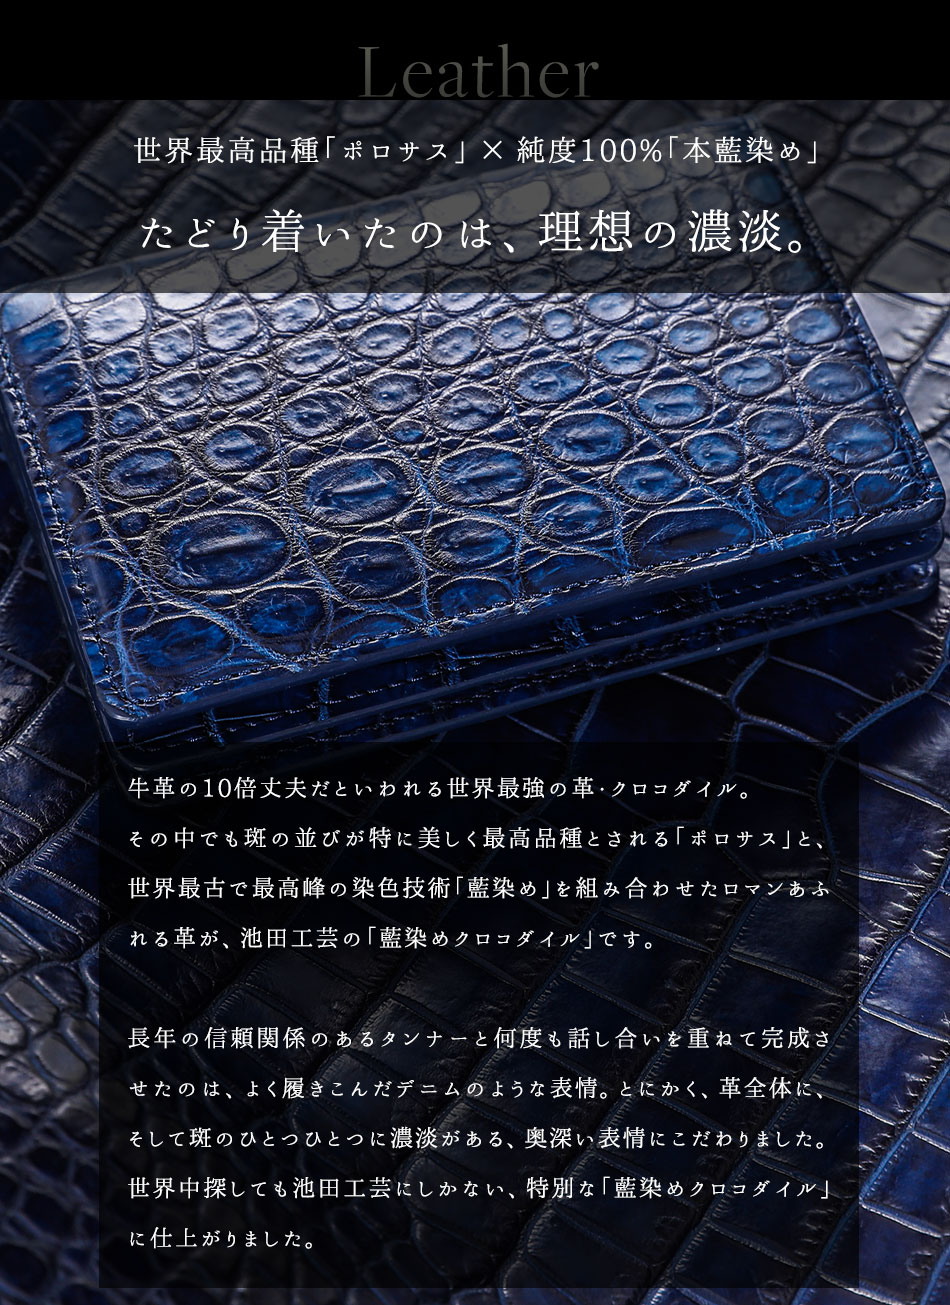 藍染めクロコダイル 名刺ケース【池田工芸】“勝ち色”「藍染め」で 